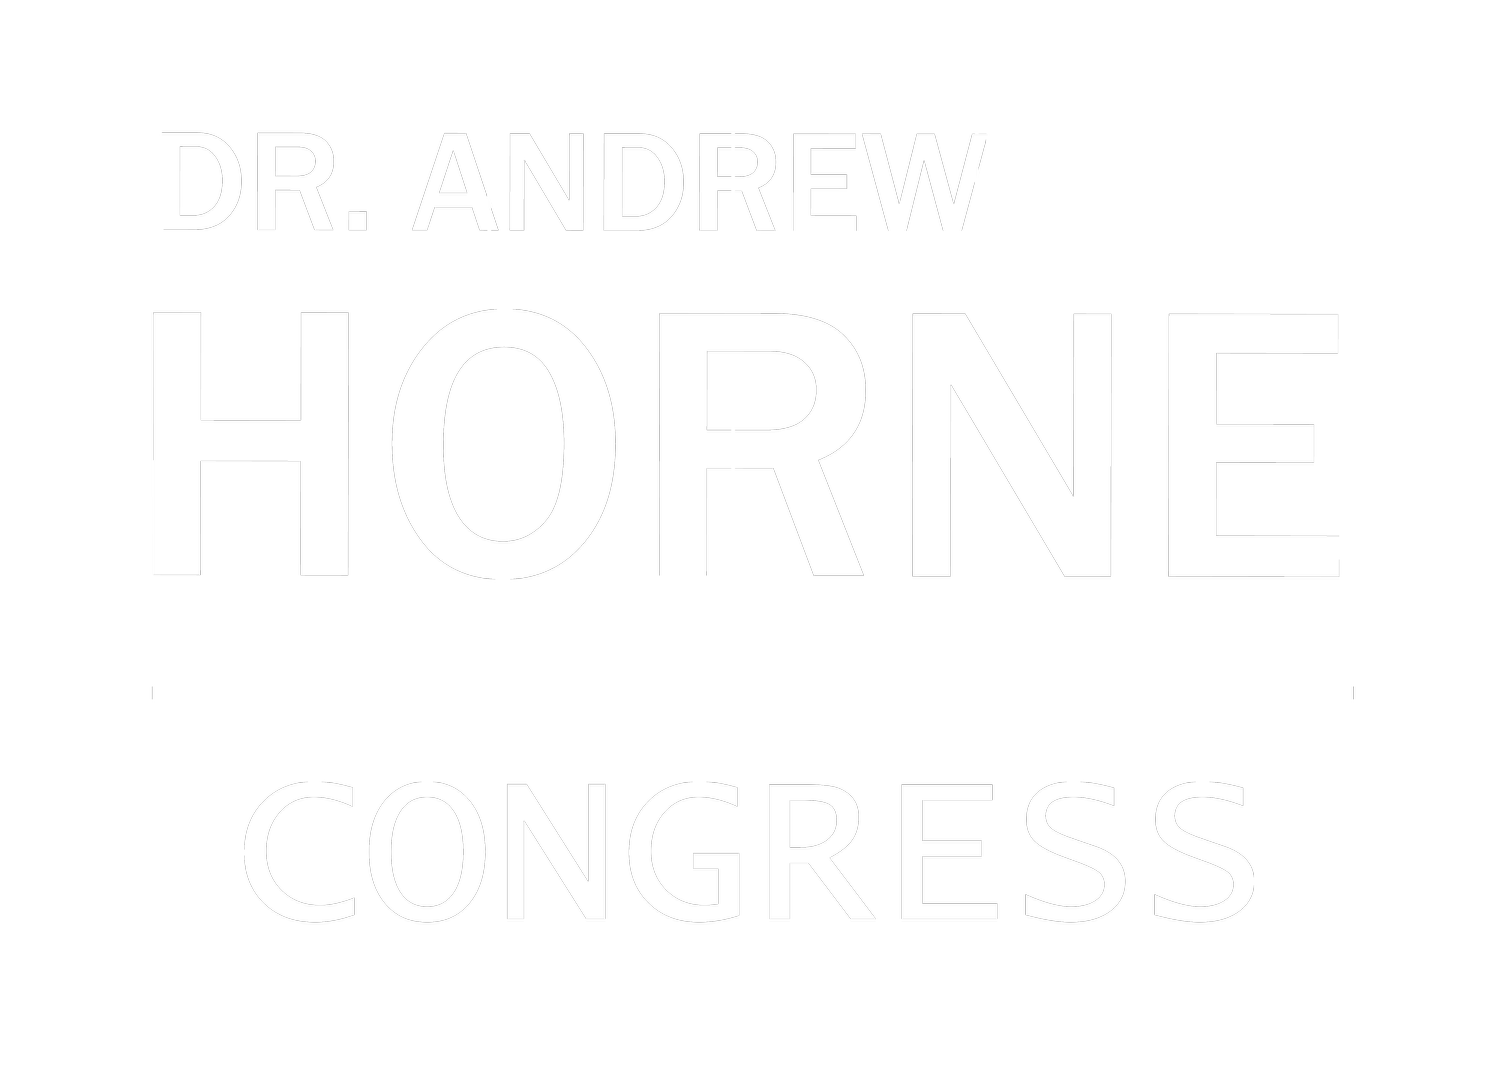 Andrew Horne U.S. Congress